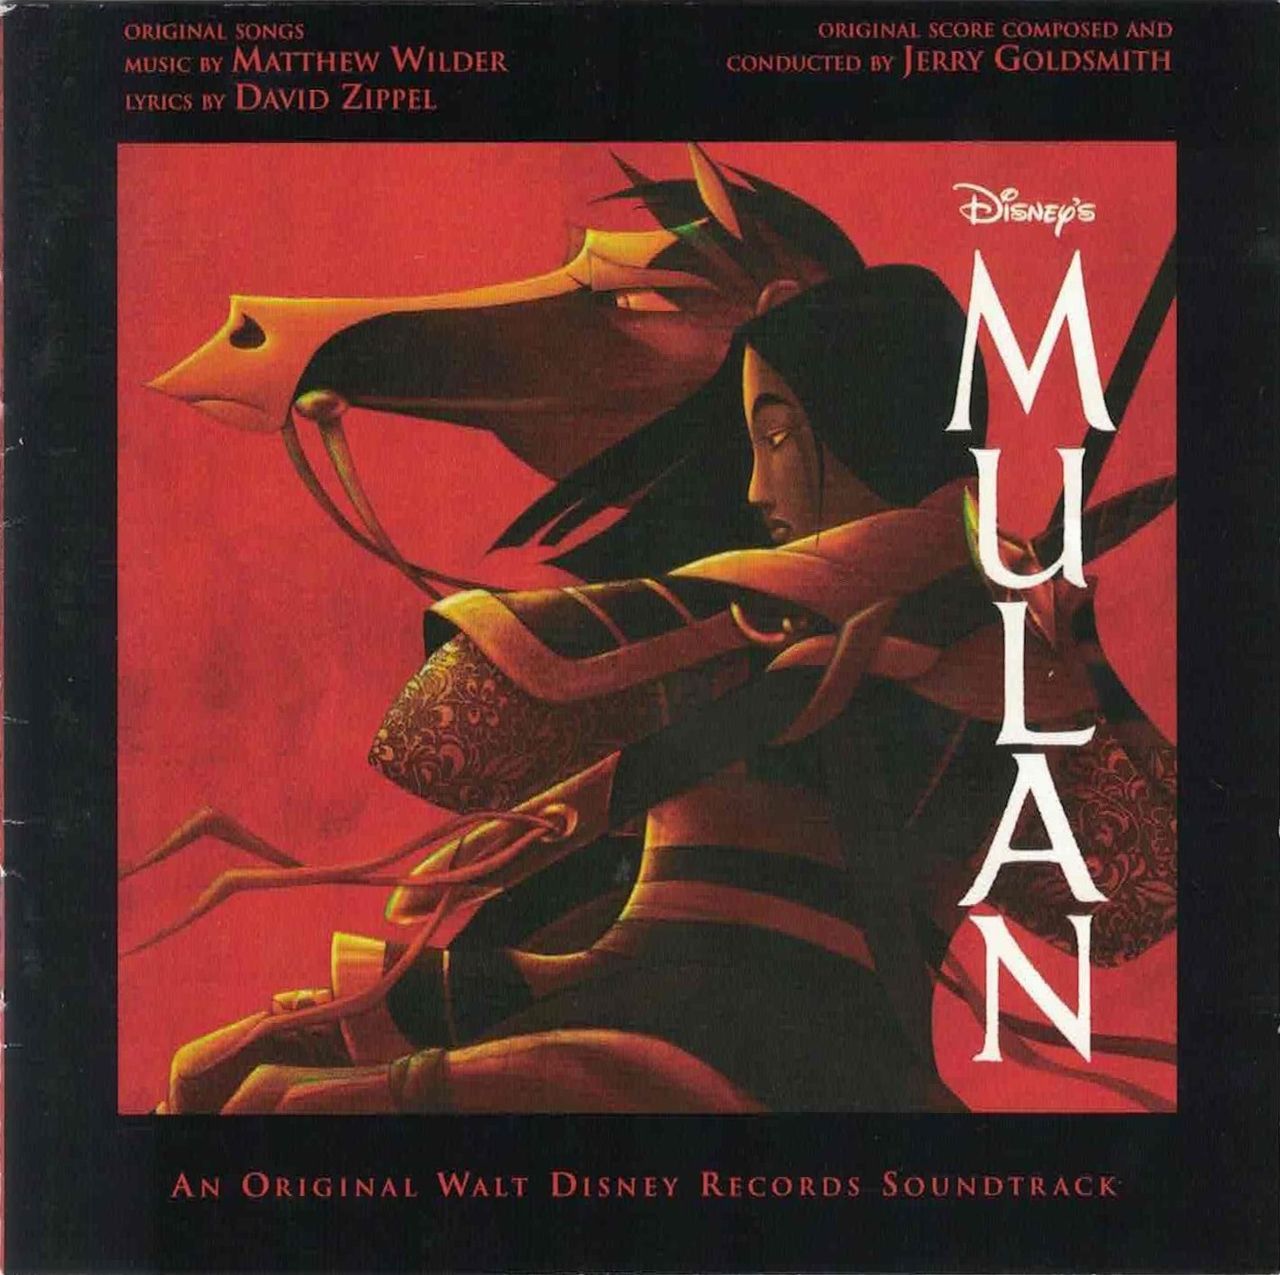 Mulan album art